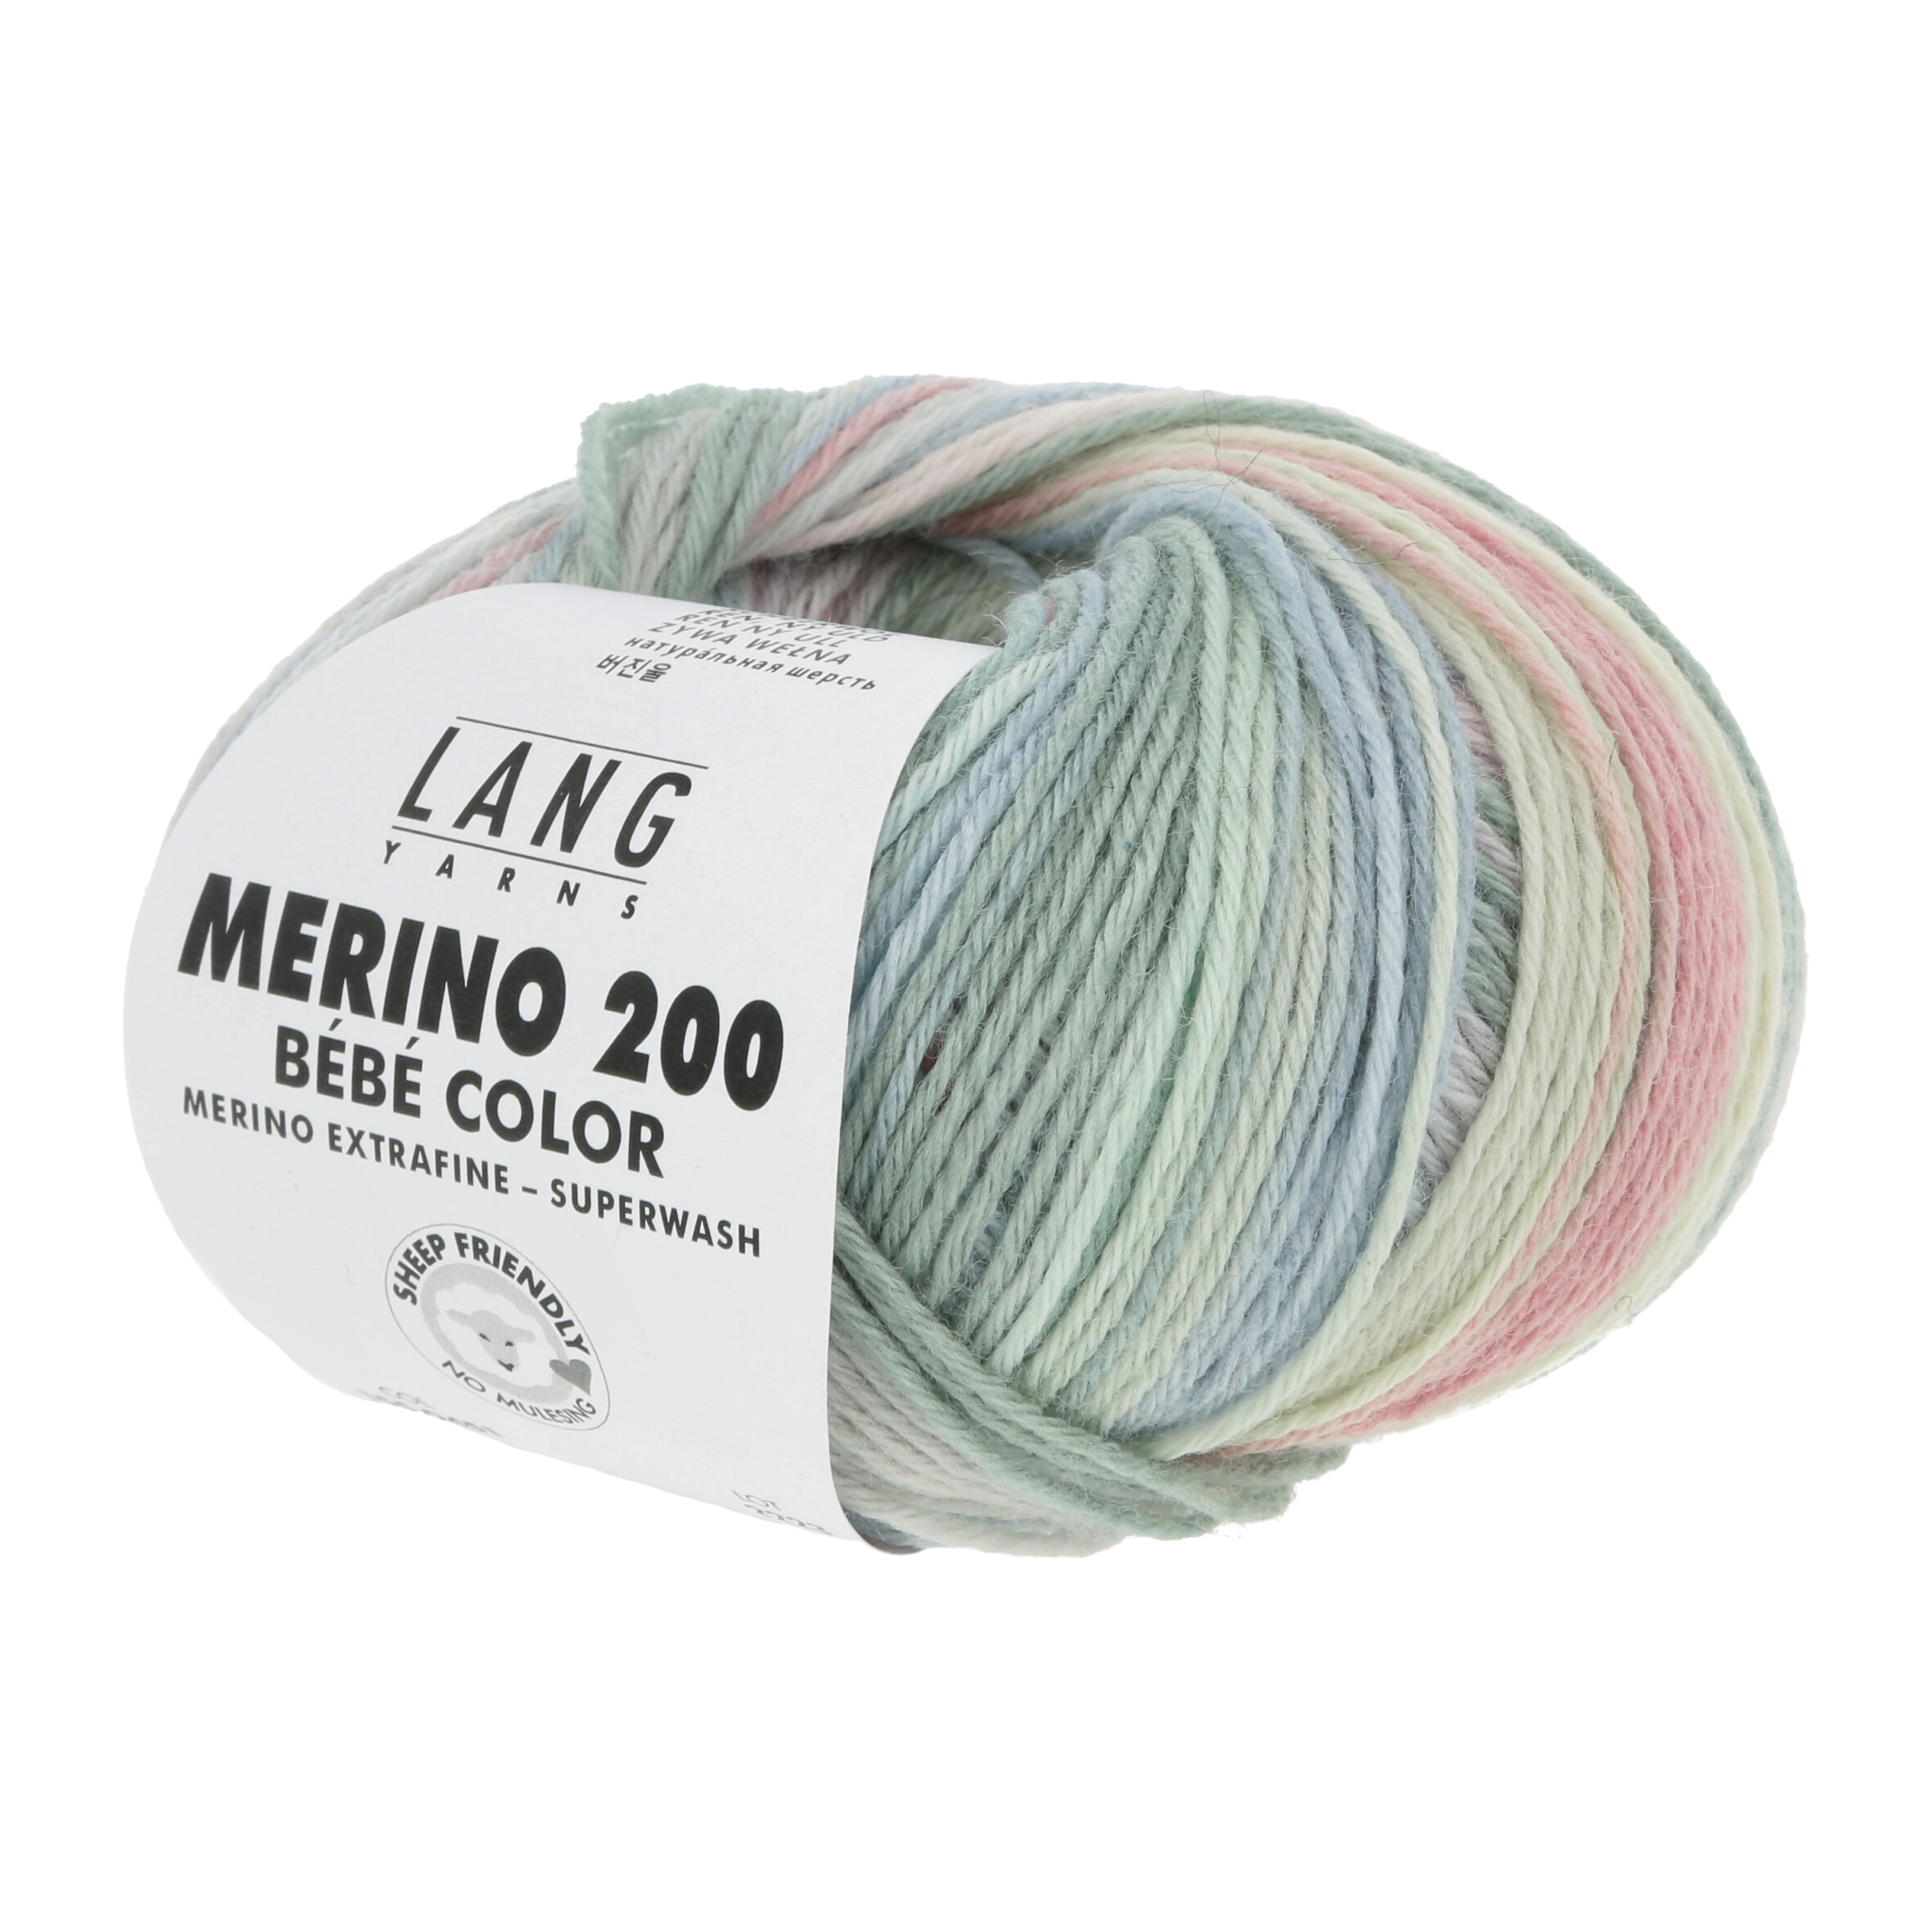 Lana Merino 200 - Bebé Color